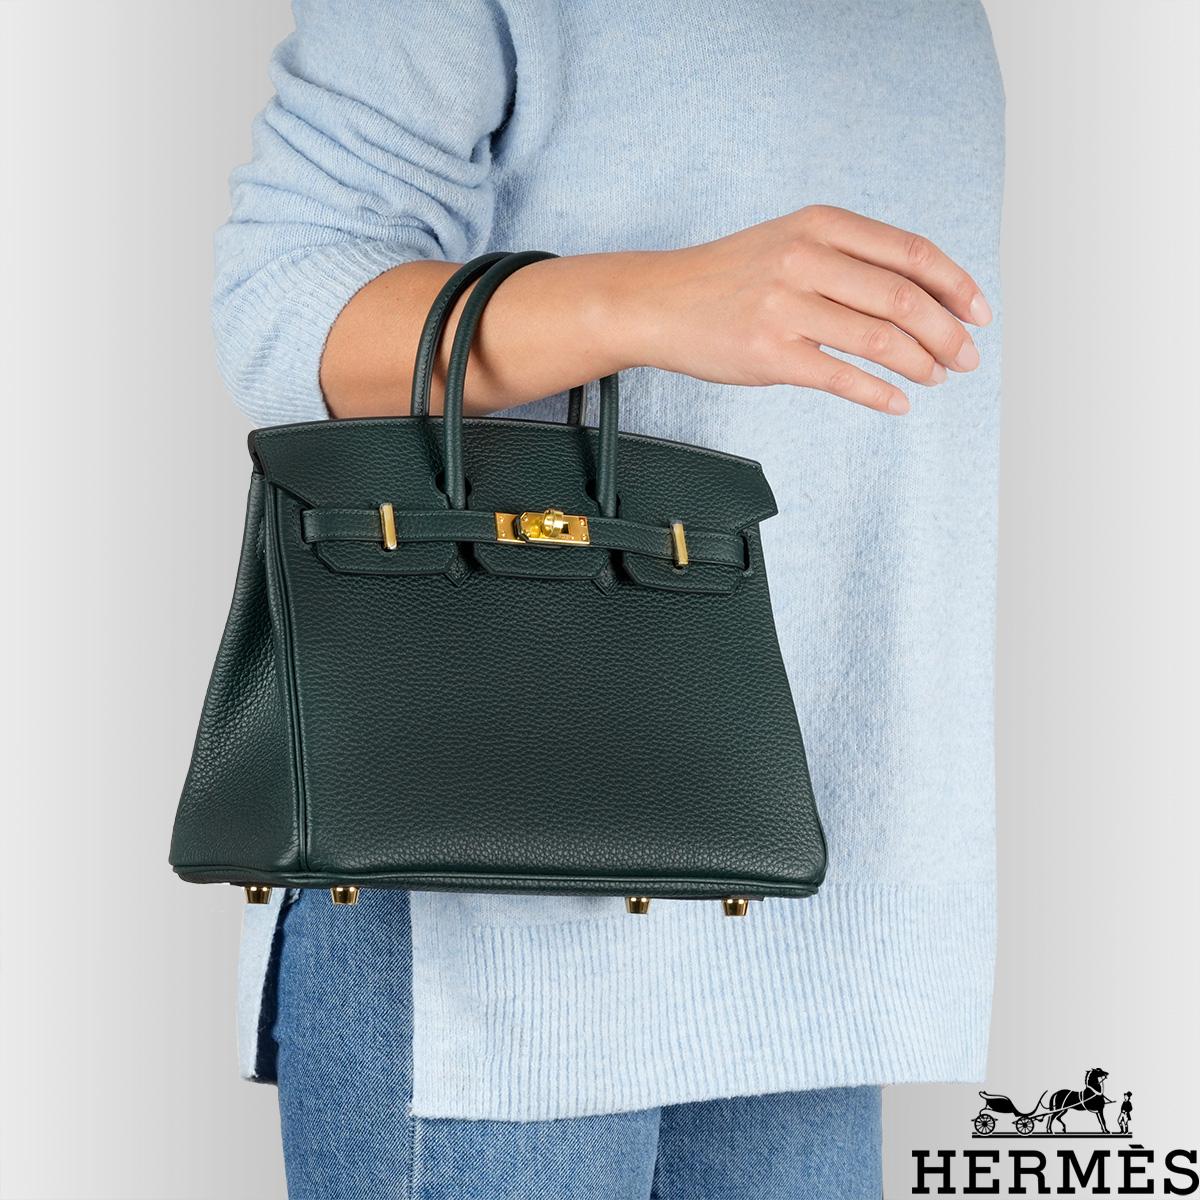 Hermès Birkin 25cm Vert Cypress Togo GHW 6